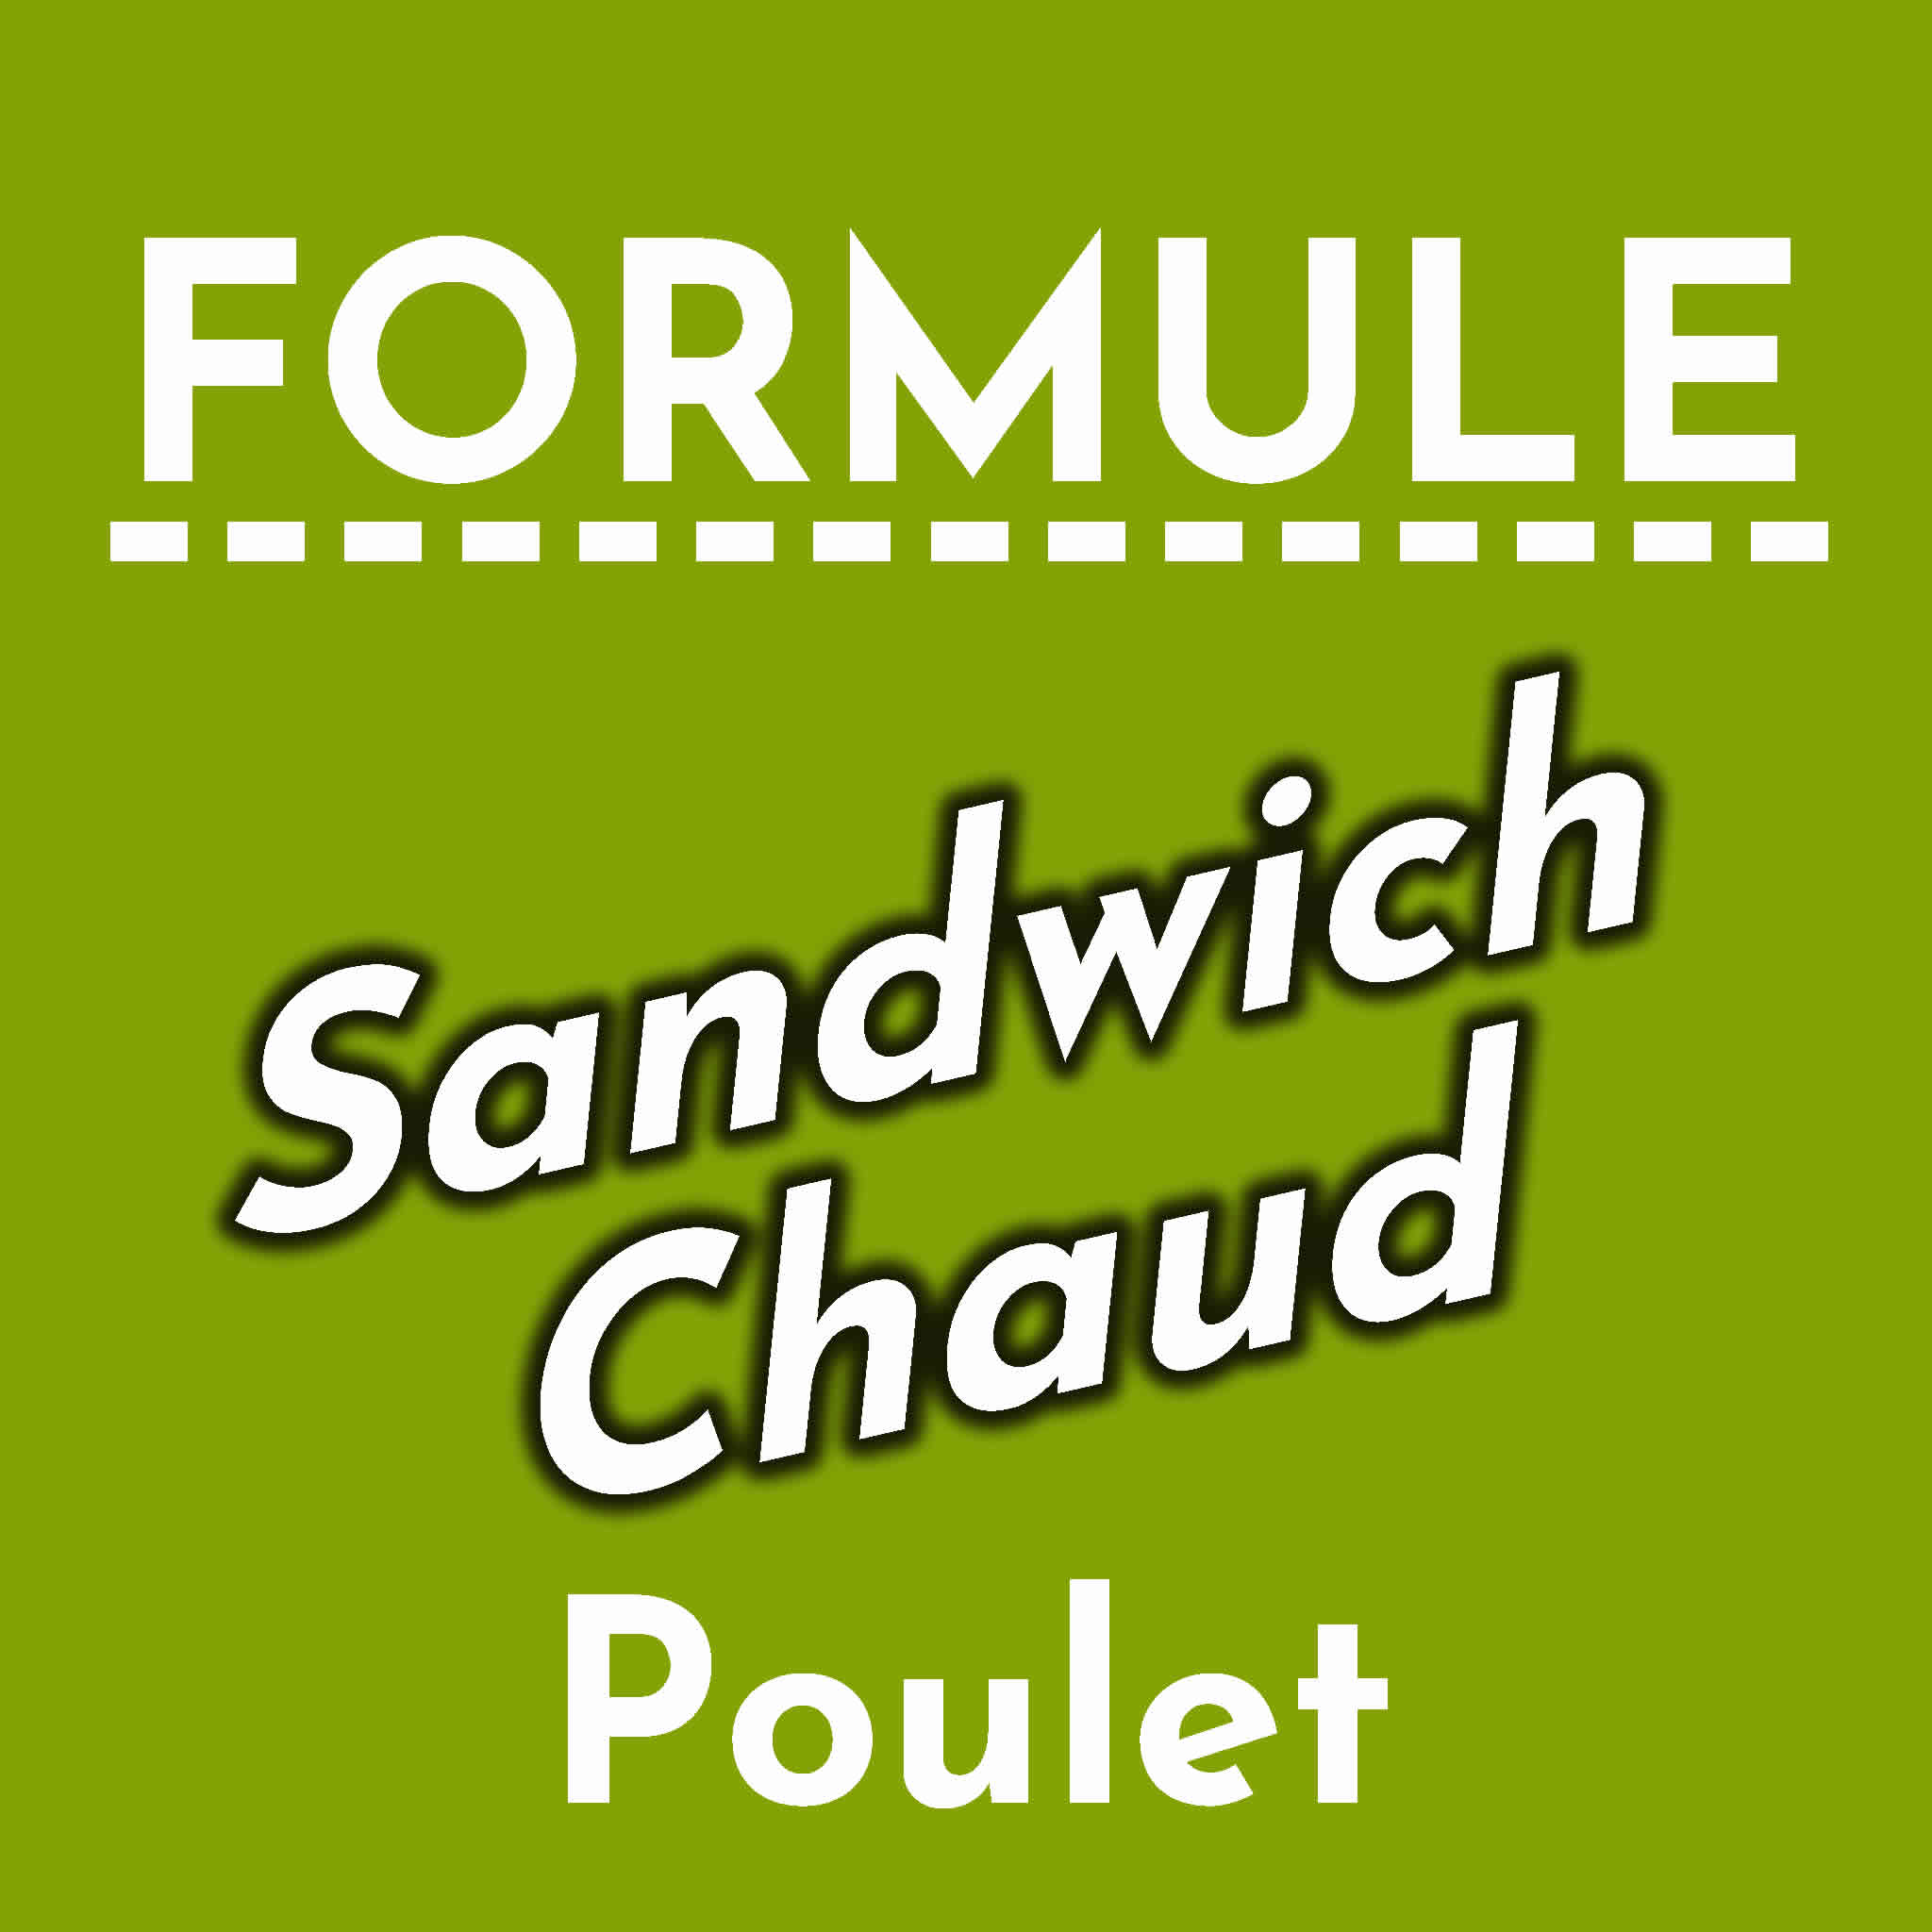 Formule Sandwich Chaud Poulet Crispy Frites